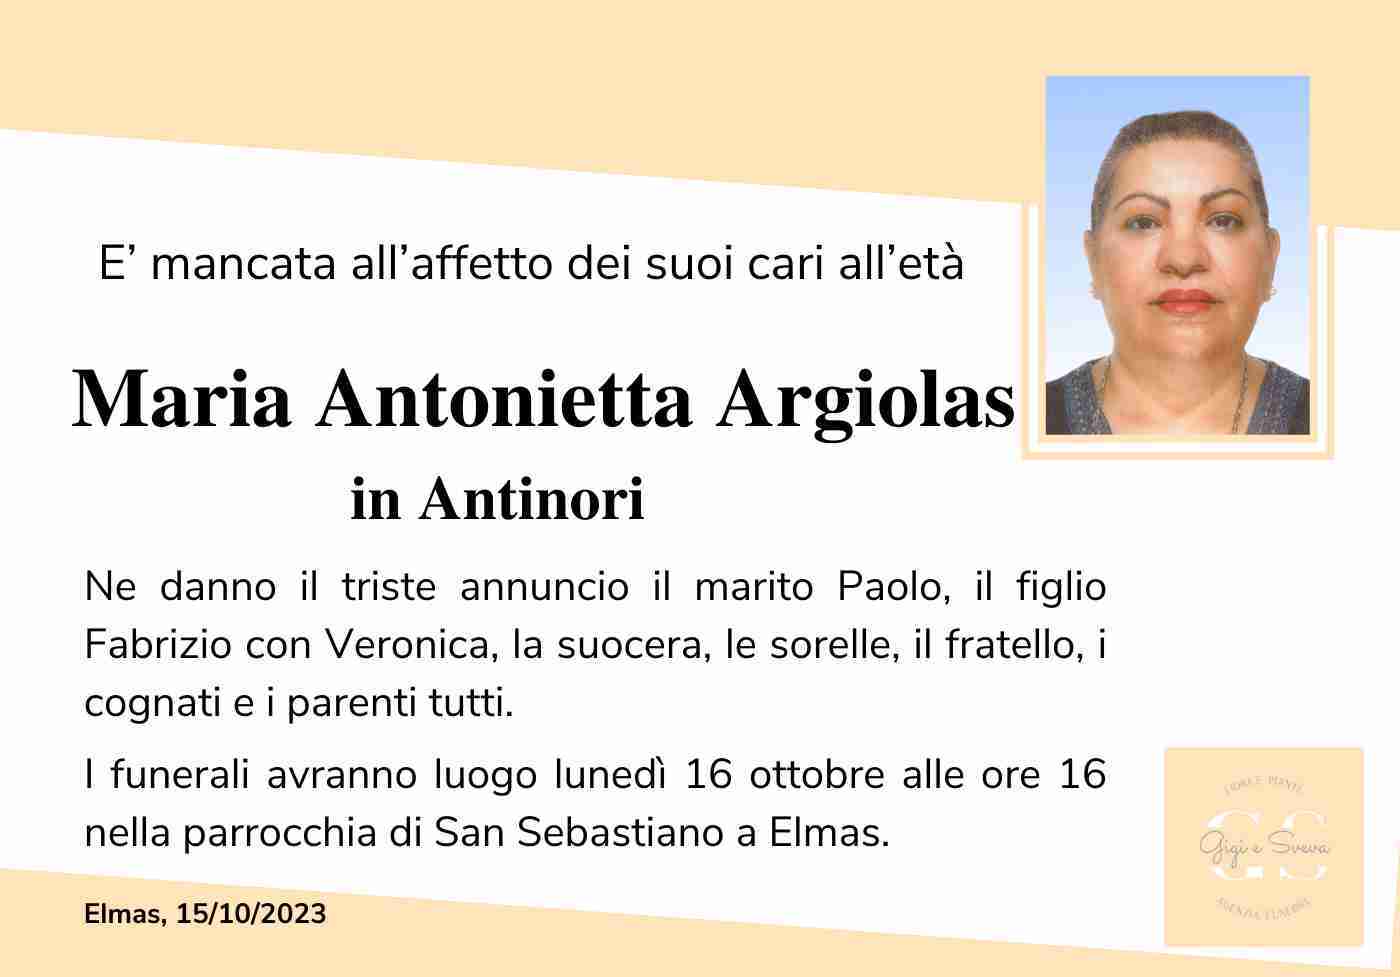 Maria Antonietta Argiolas